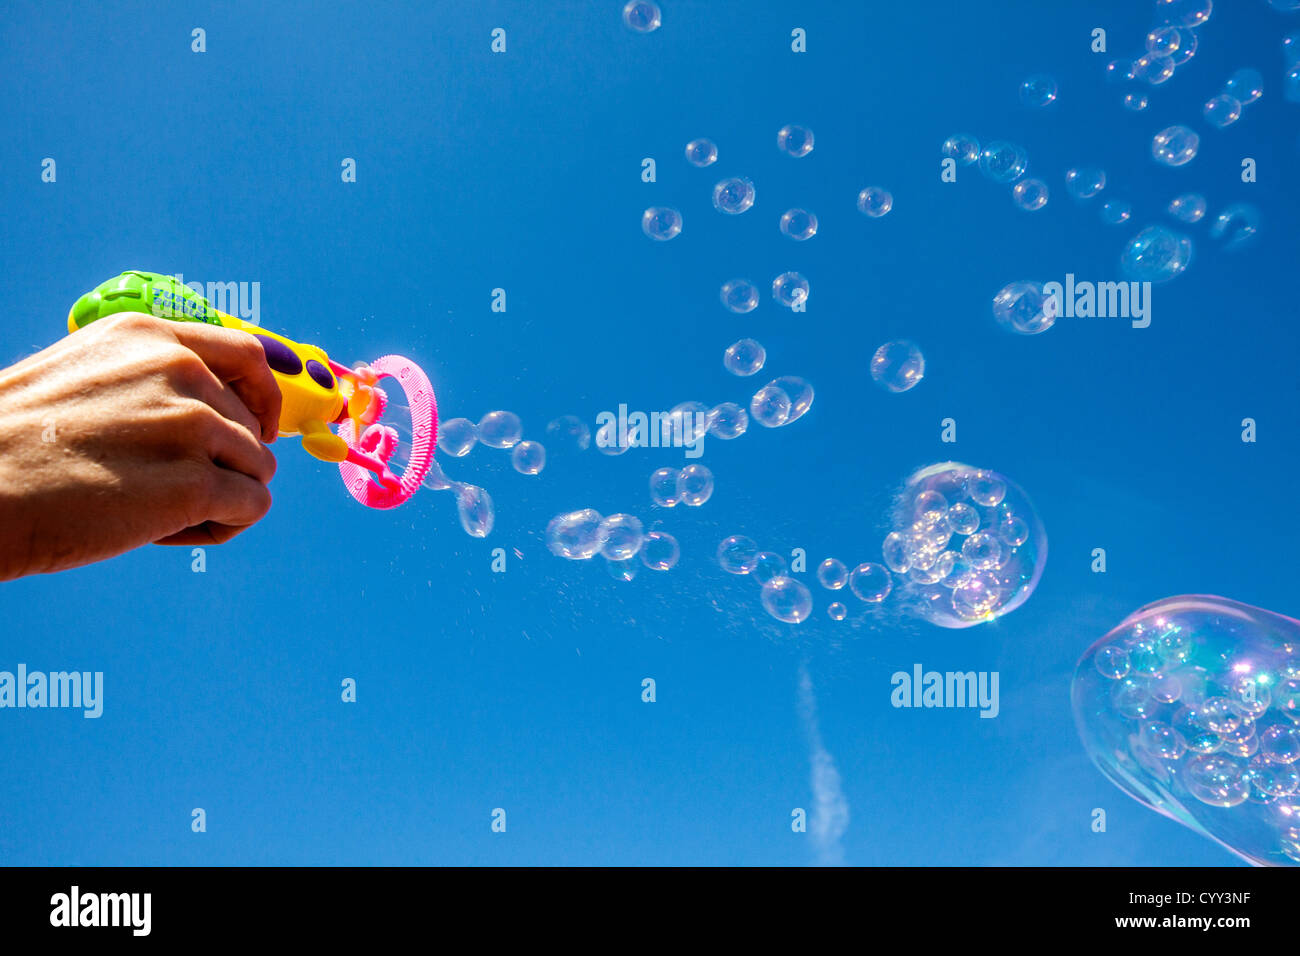 Seifenblasen. Luft weht durch einen Ring, bedeckt mit Wasser und Seife. Mit einem Kinderspielzeug, eine Seifenblasen-Maschine gemacht. Stockfoto